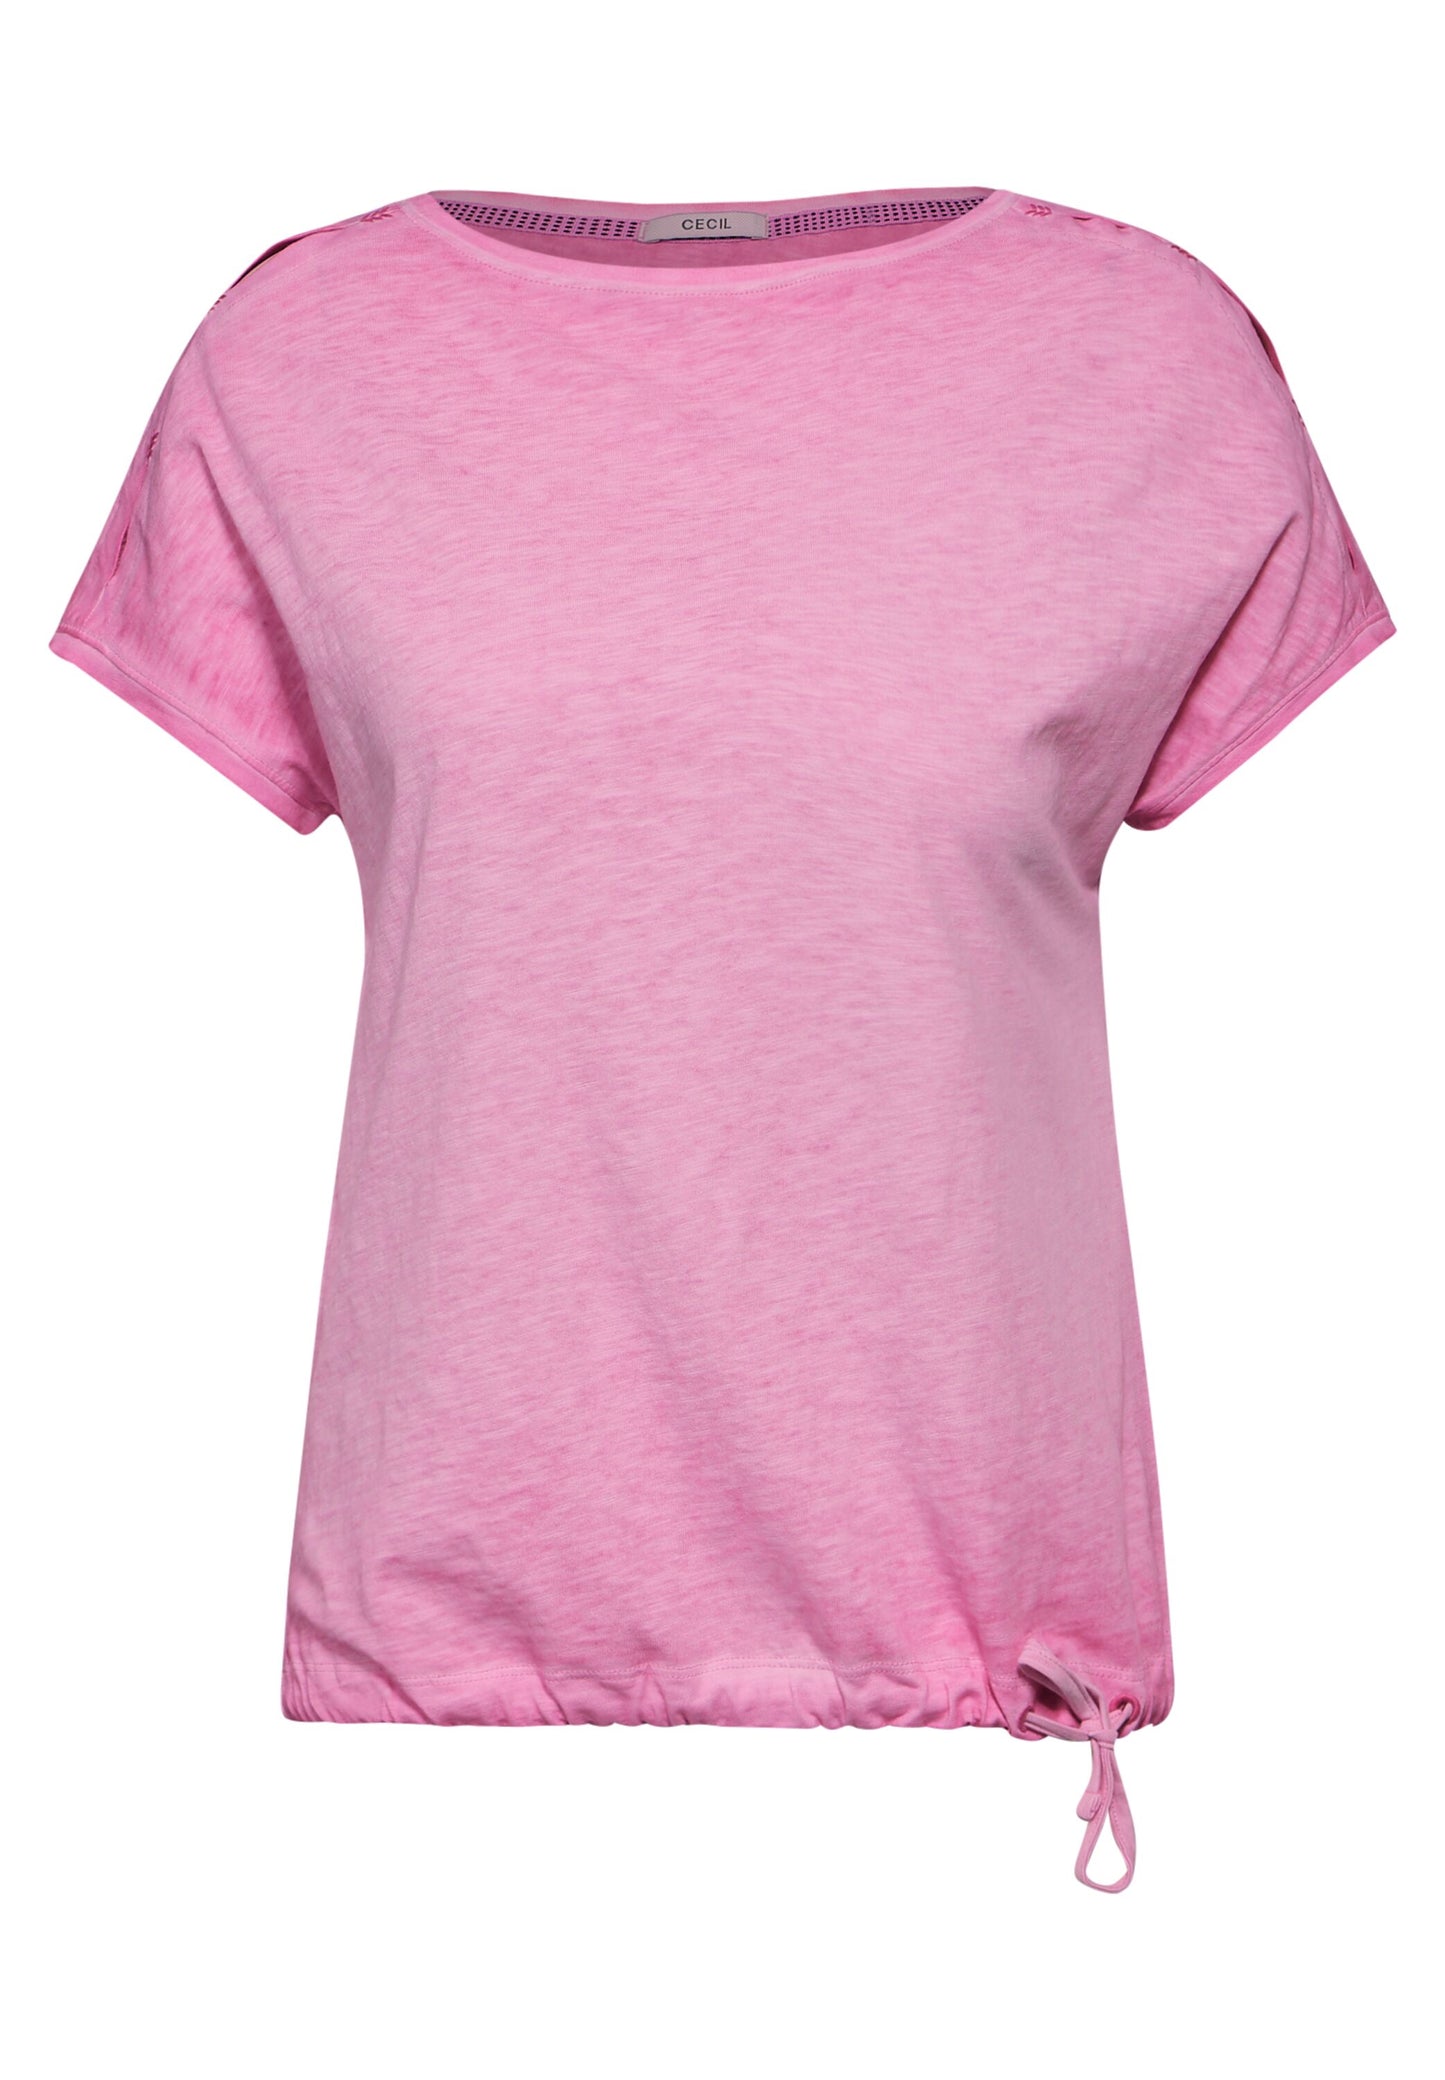 CECIL - Flammgarn T-Shirt - pink